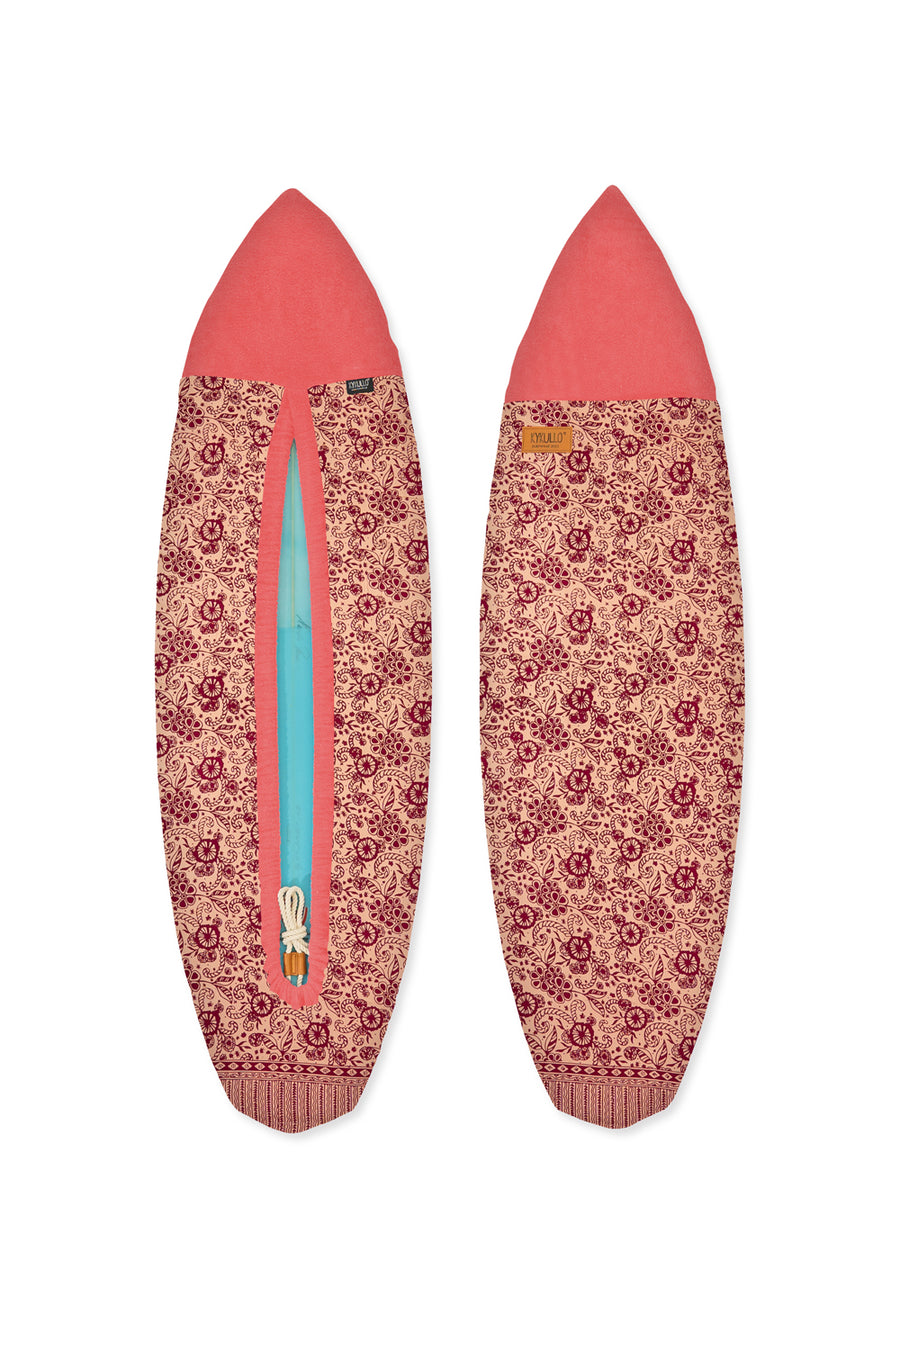 SURFWRAP 5'10 - PINK